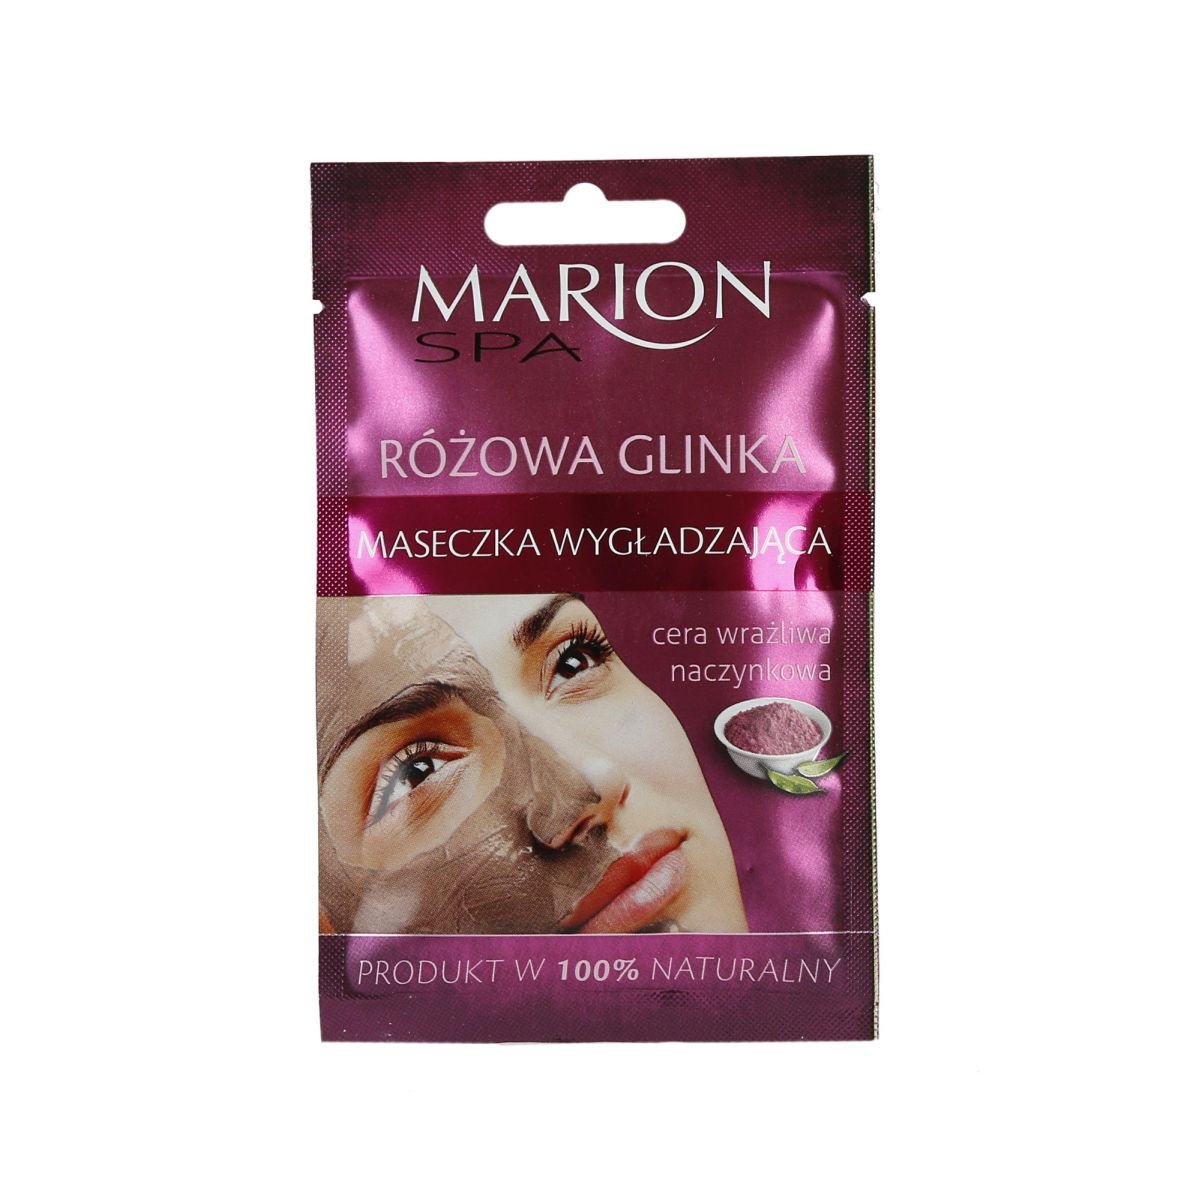 Marion SPA wygładzająca maseczka do twarzy z różową glinką 8g